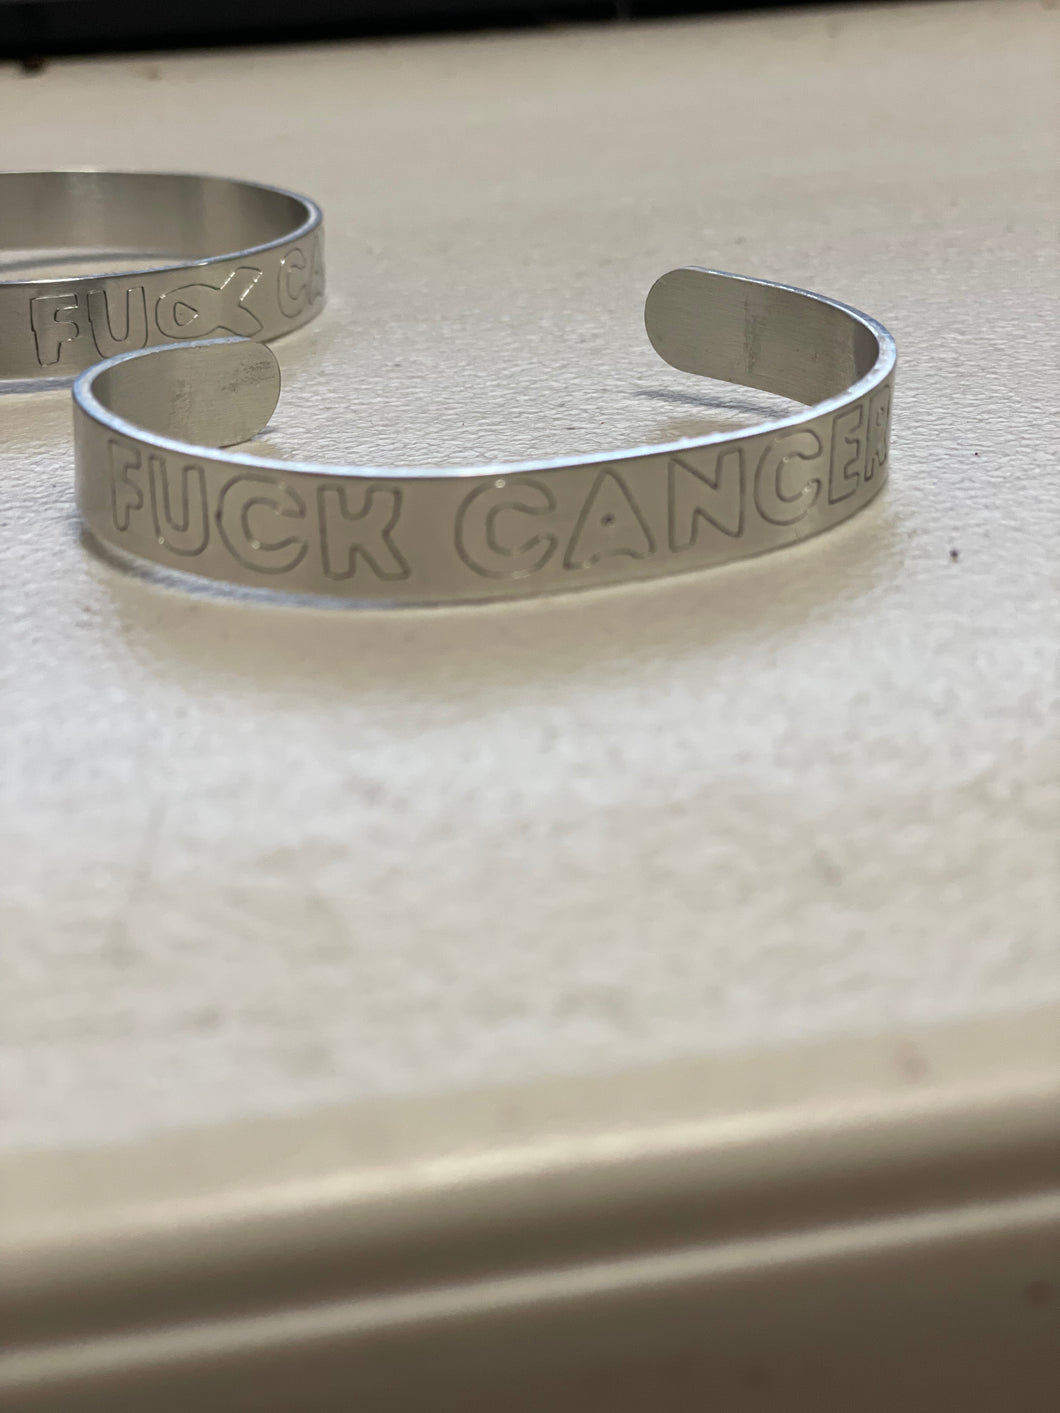 Fuck Cancer Cuffs